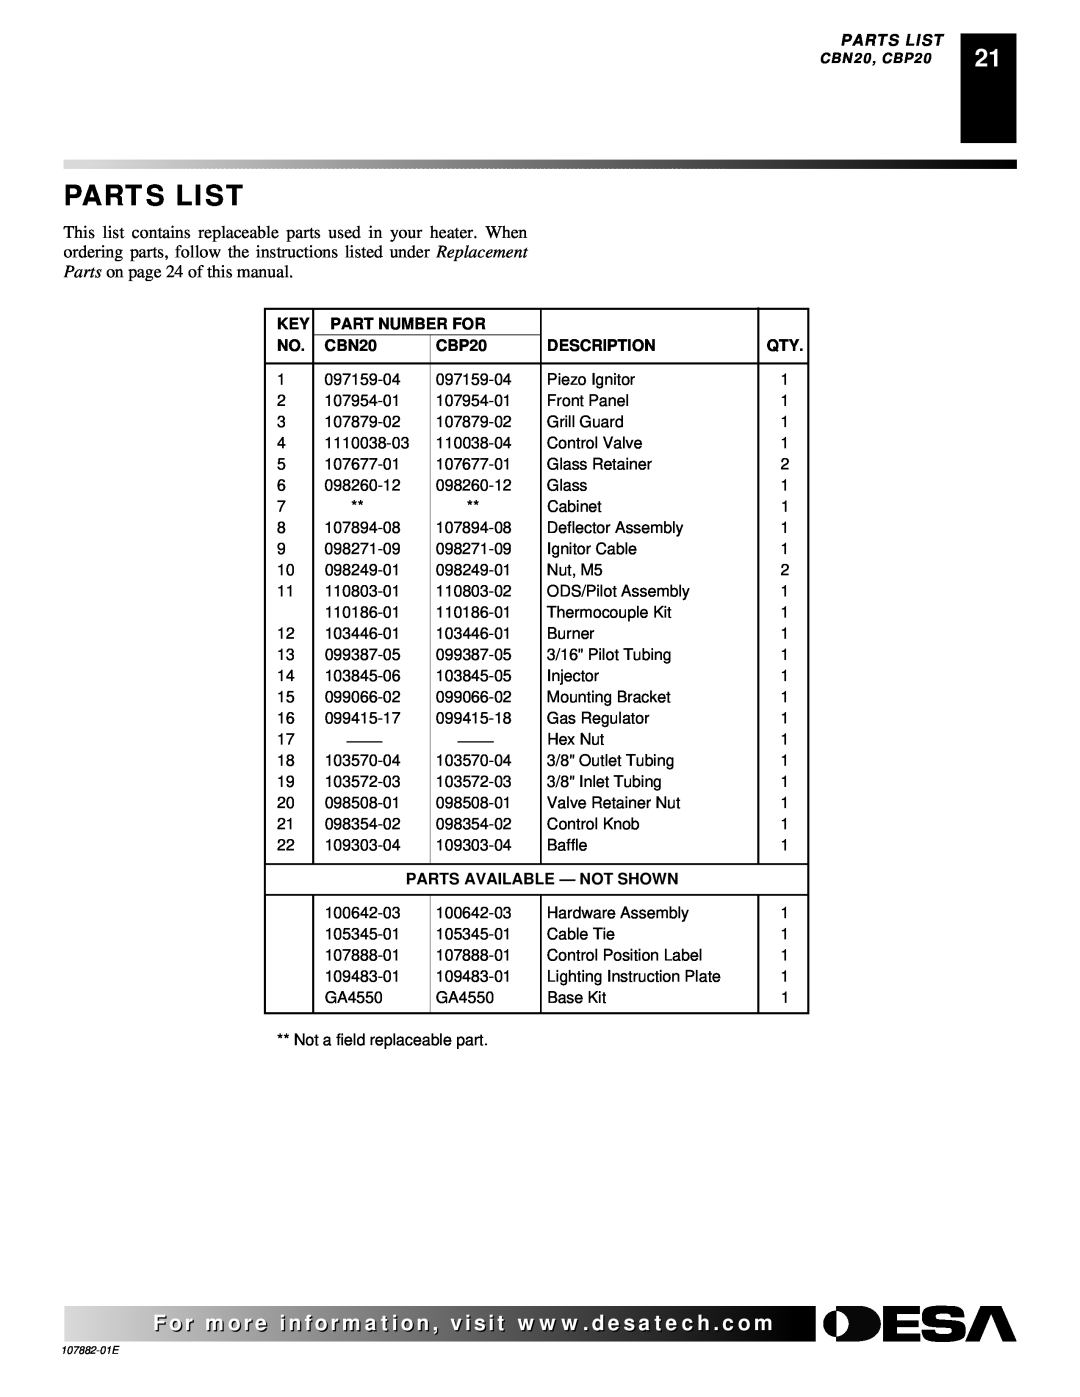 Desa Tech CBN30T, CBN20T, CBP30T, CBP20T Parts List, Part Number For, Description, Parts Available - Not Shown 